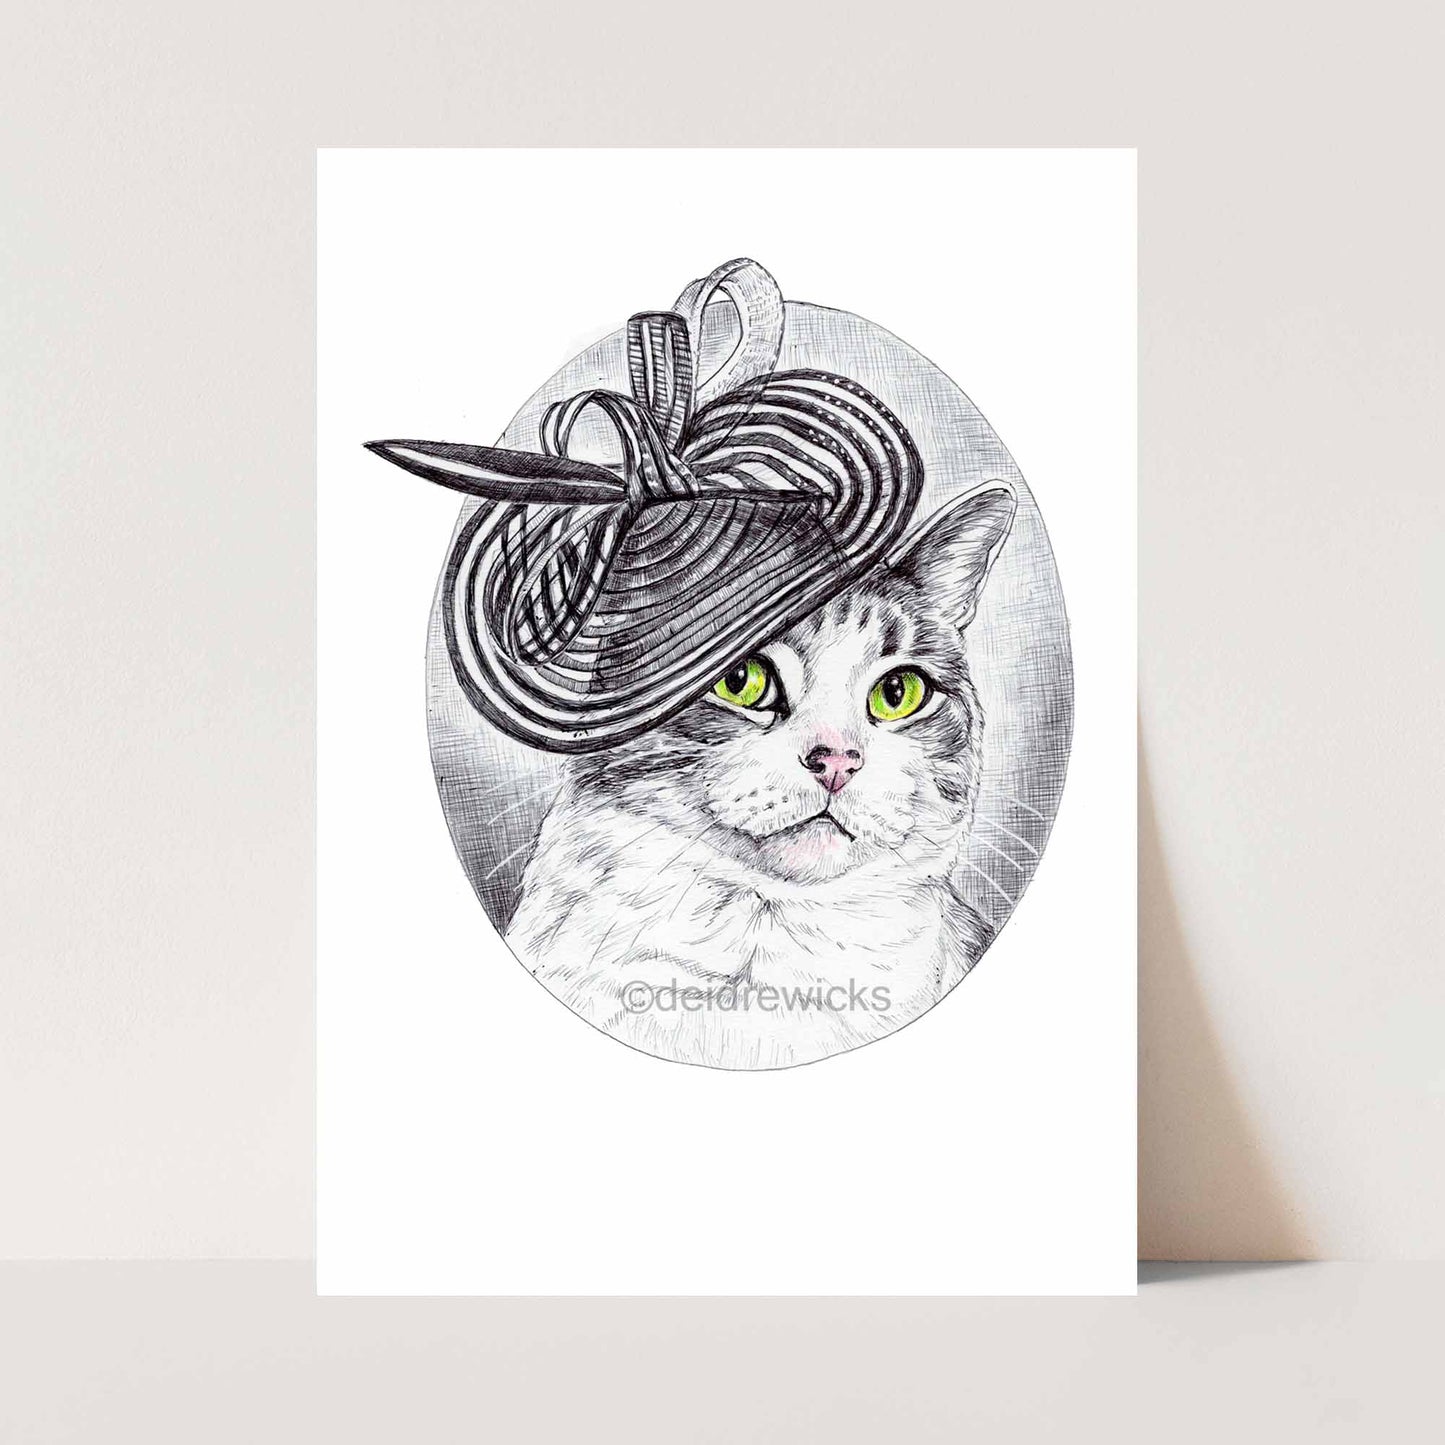 I am Royalty Cat Print